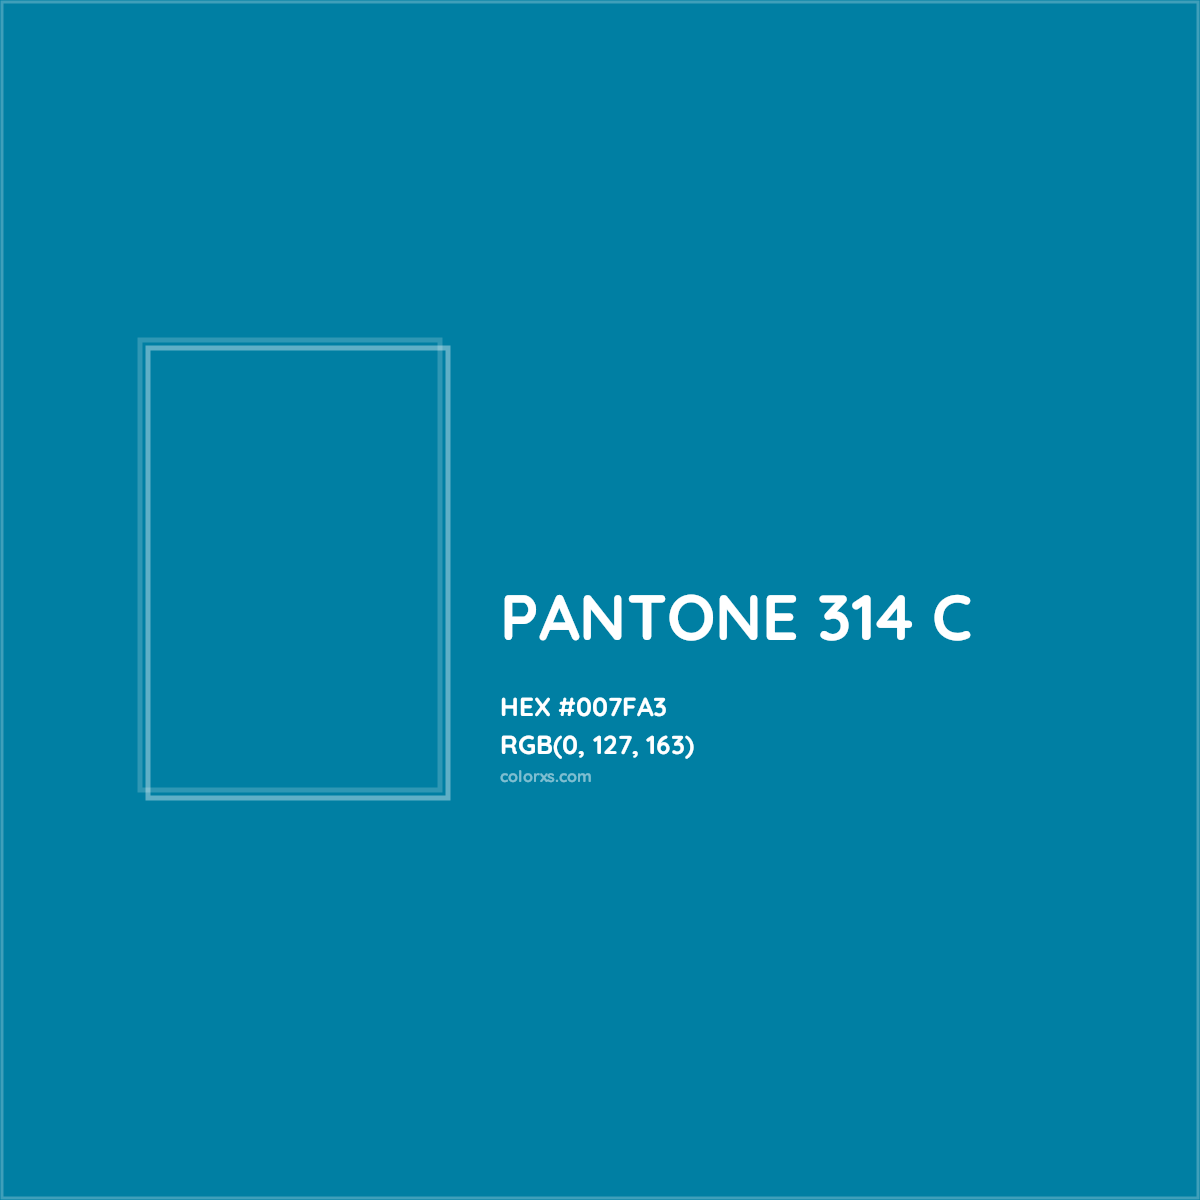 HEX #007FA3 PANTONE 314 C CMS Pantone PMS - Color Code